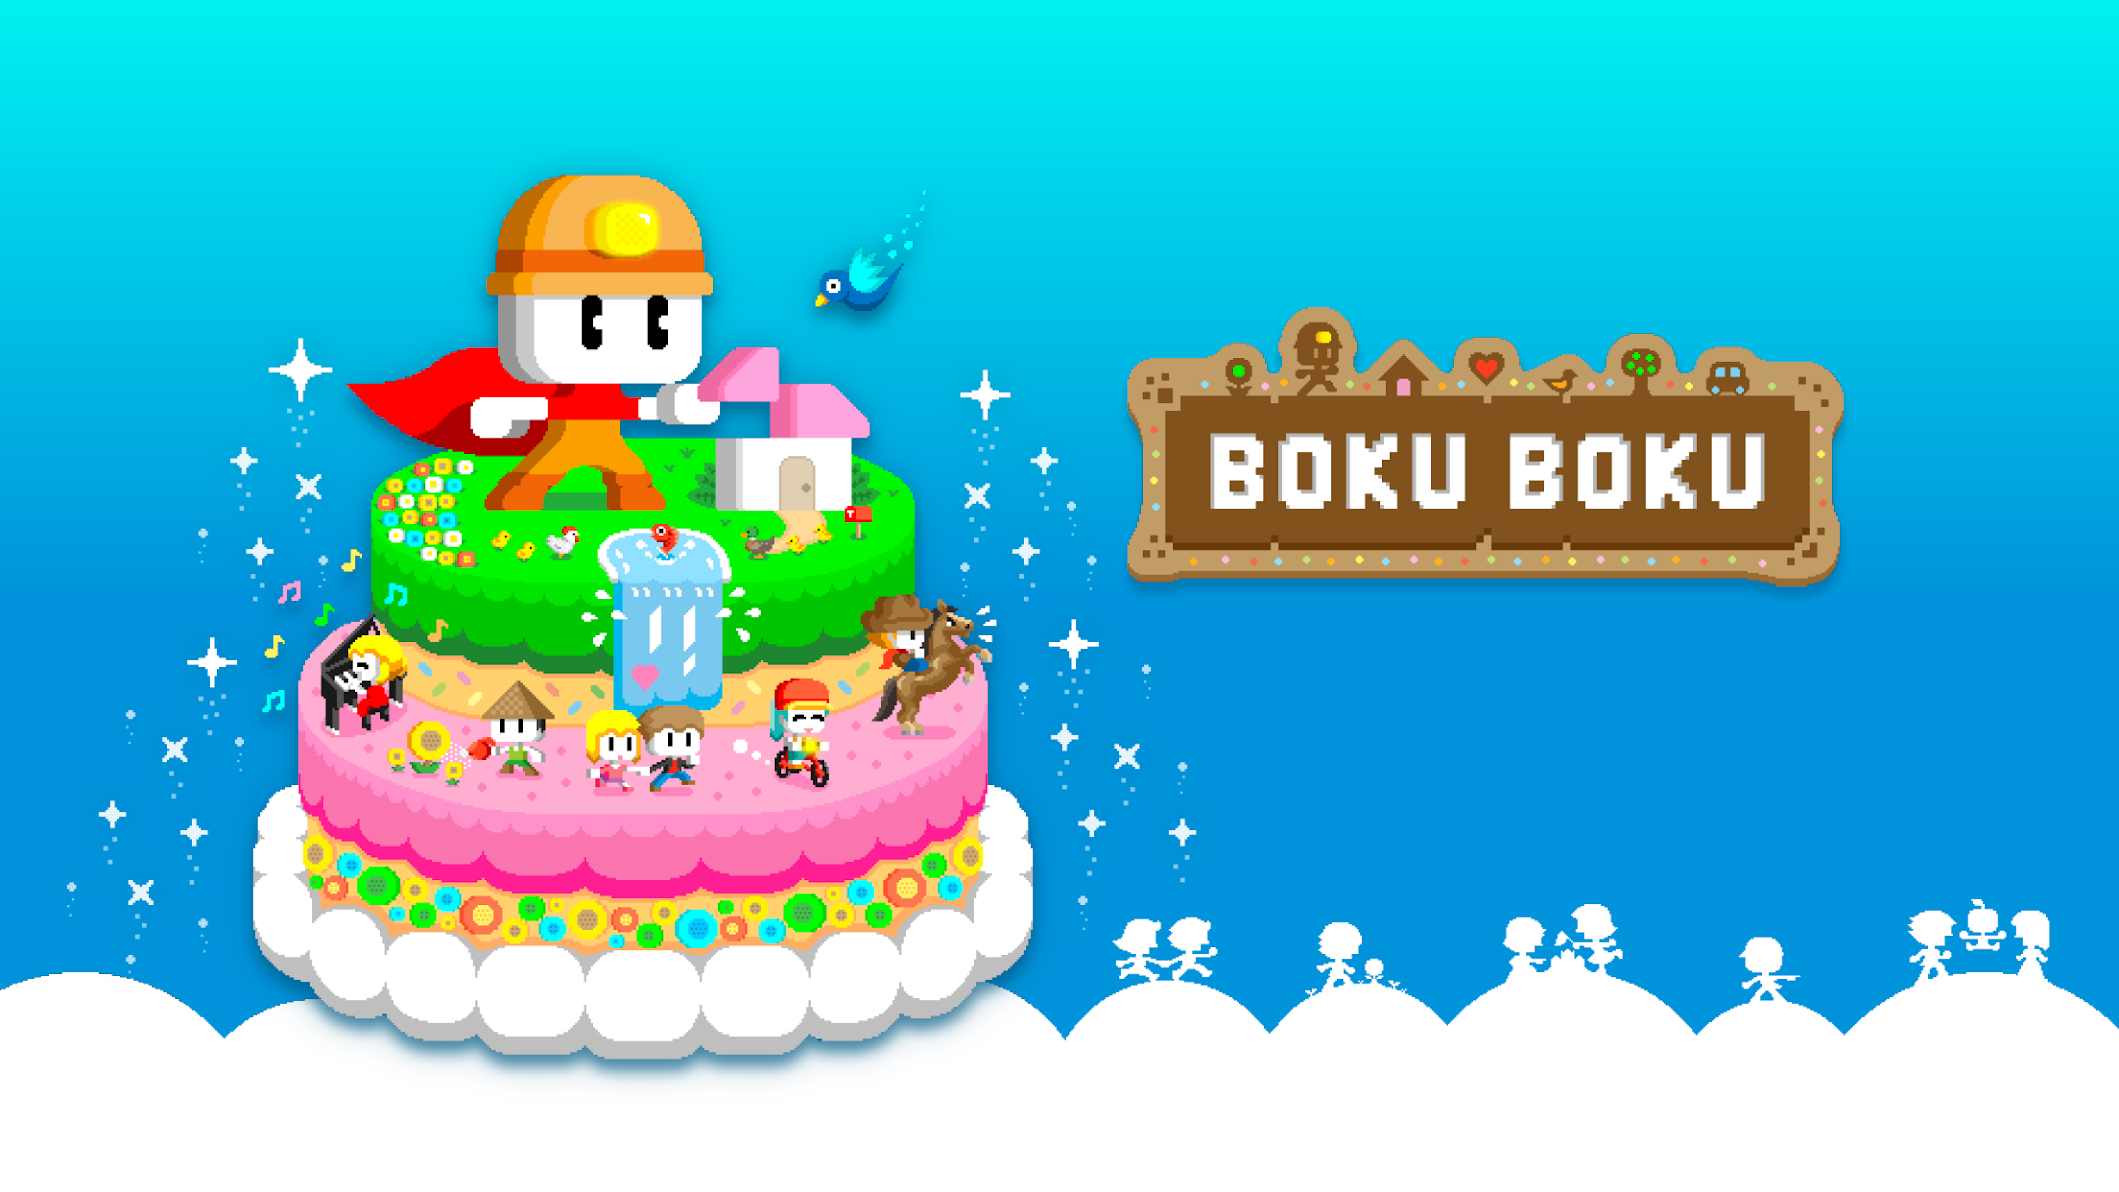 دانلود BOKU BOKU 1.0.214 – بازی شبیه سازی بوکو بوکو اندروید